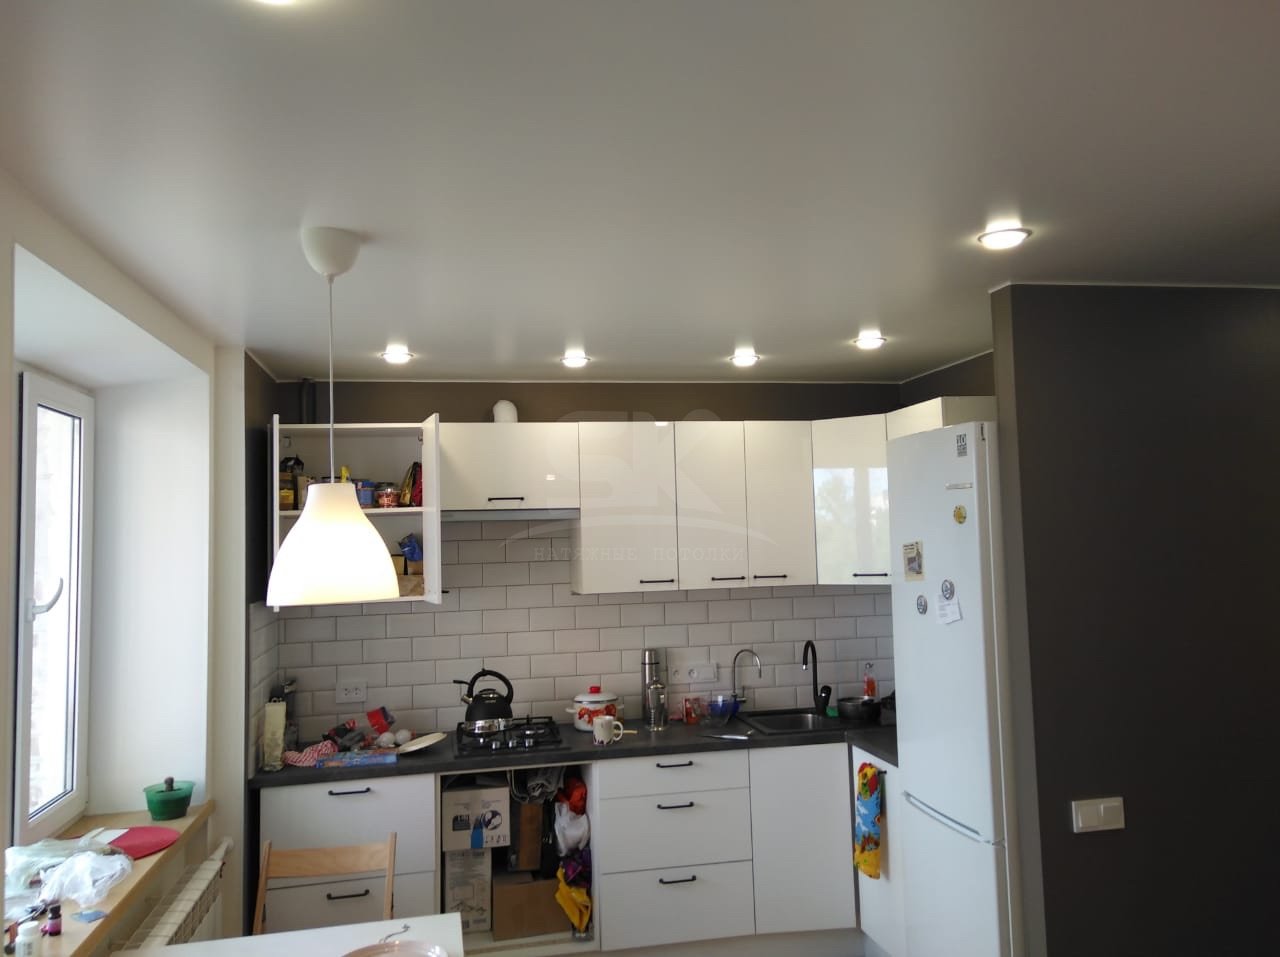 на каком расстоянии расположить точечные светильники на потолке в кухне